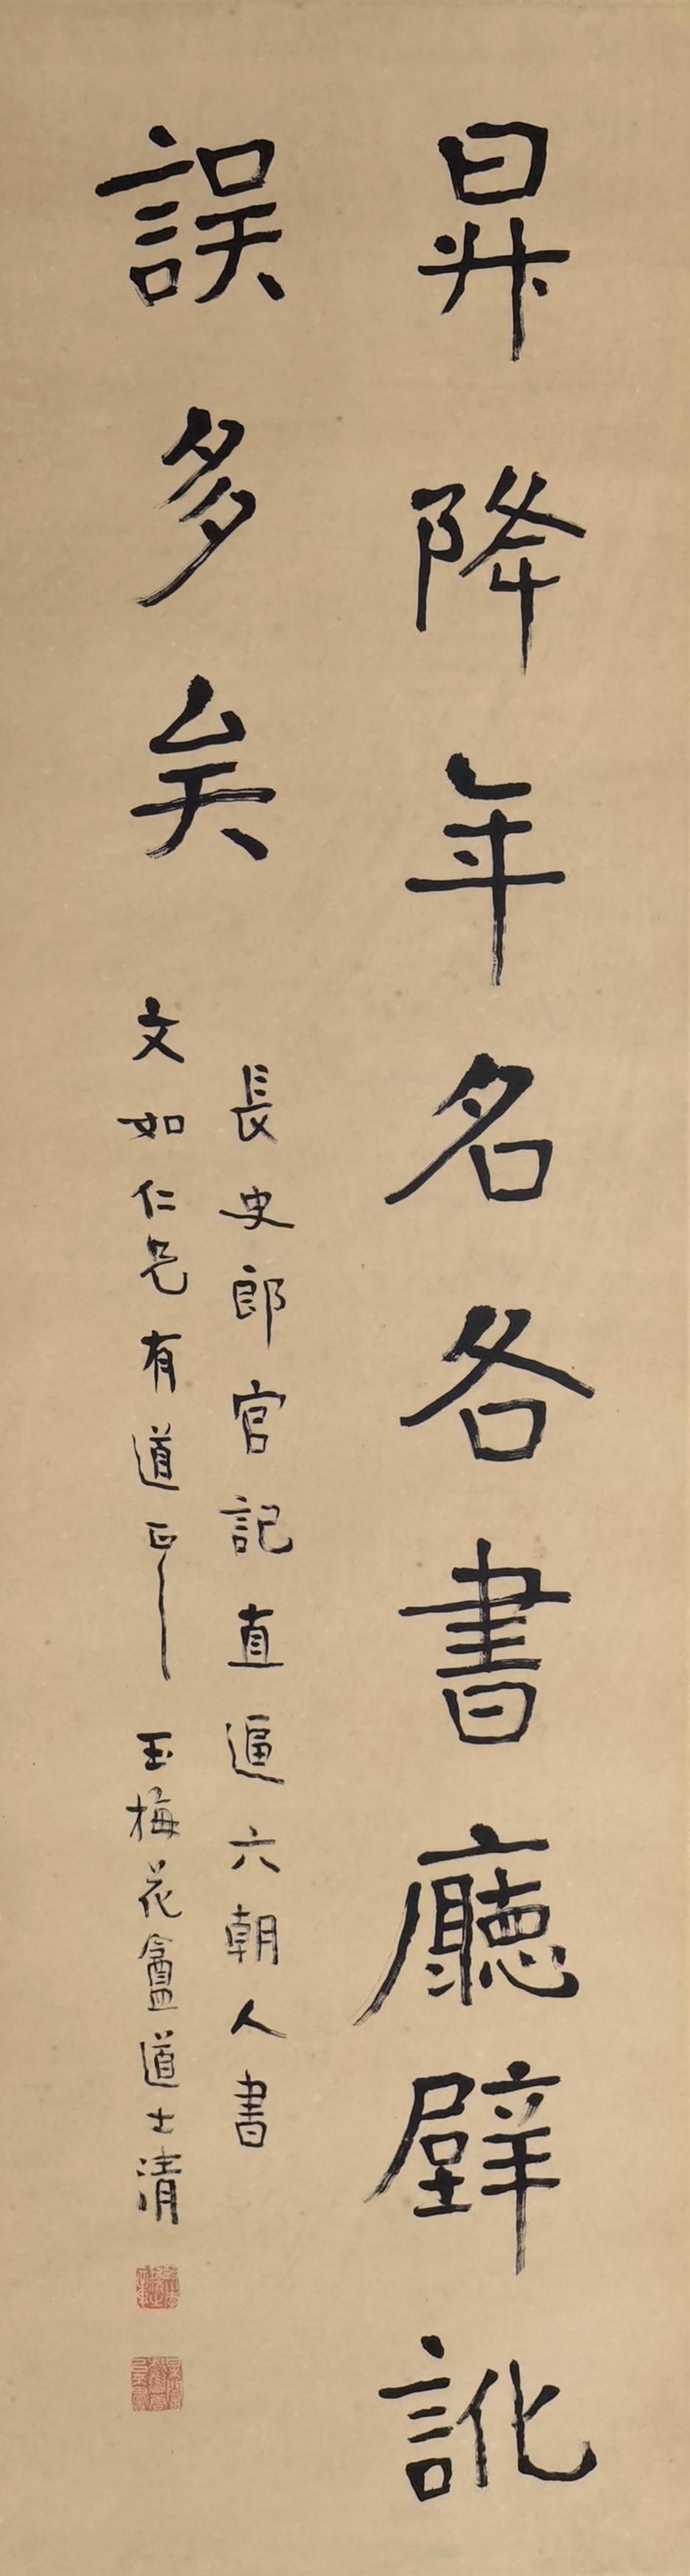 a李瑞清-1-8(144×39.5cm原轴.jpg